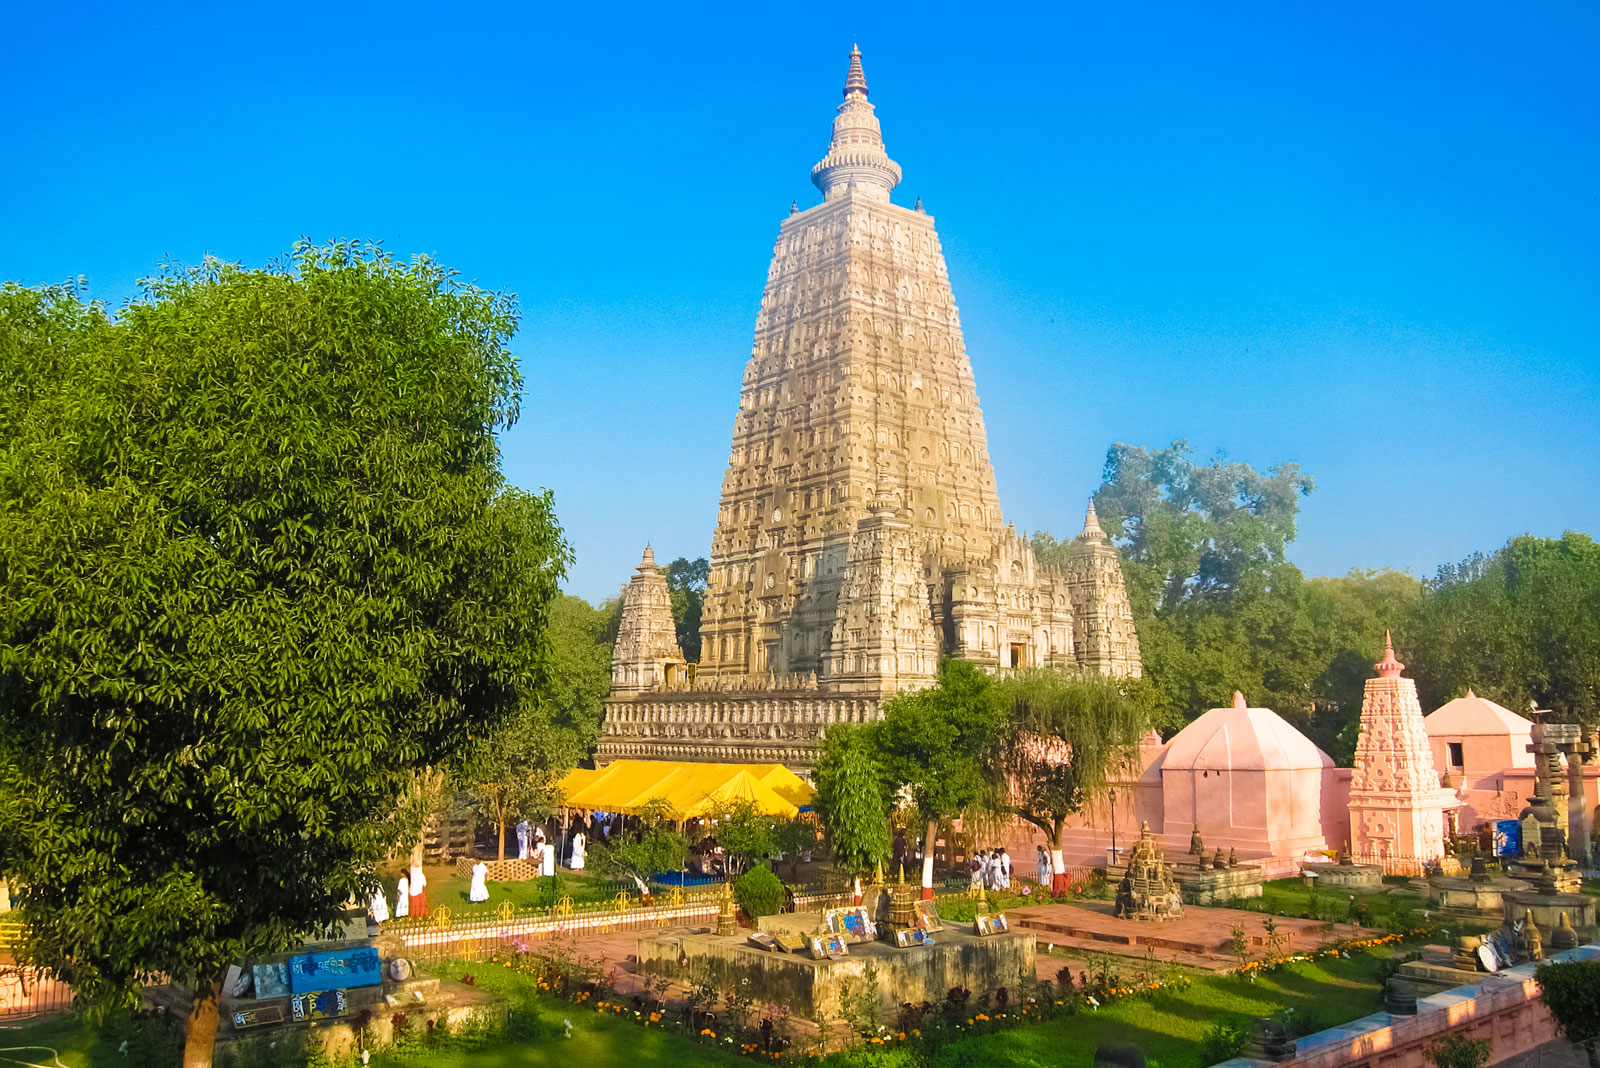 temple-Buddhist-Mahabodhi-Bihar-India-Bodh-Gaya